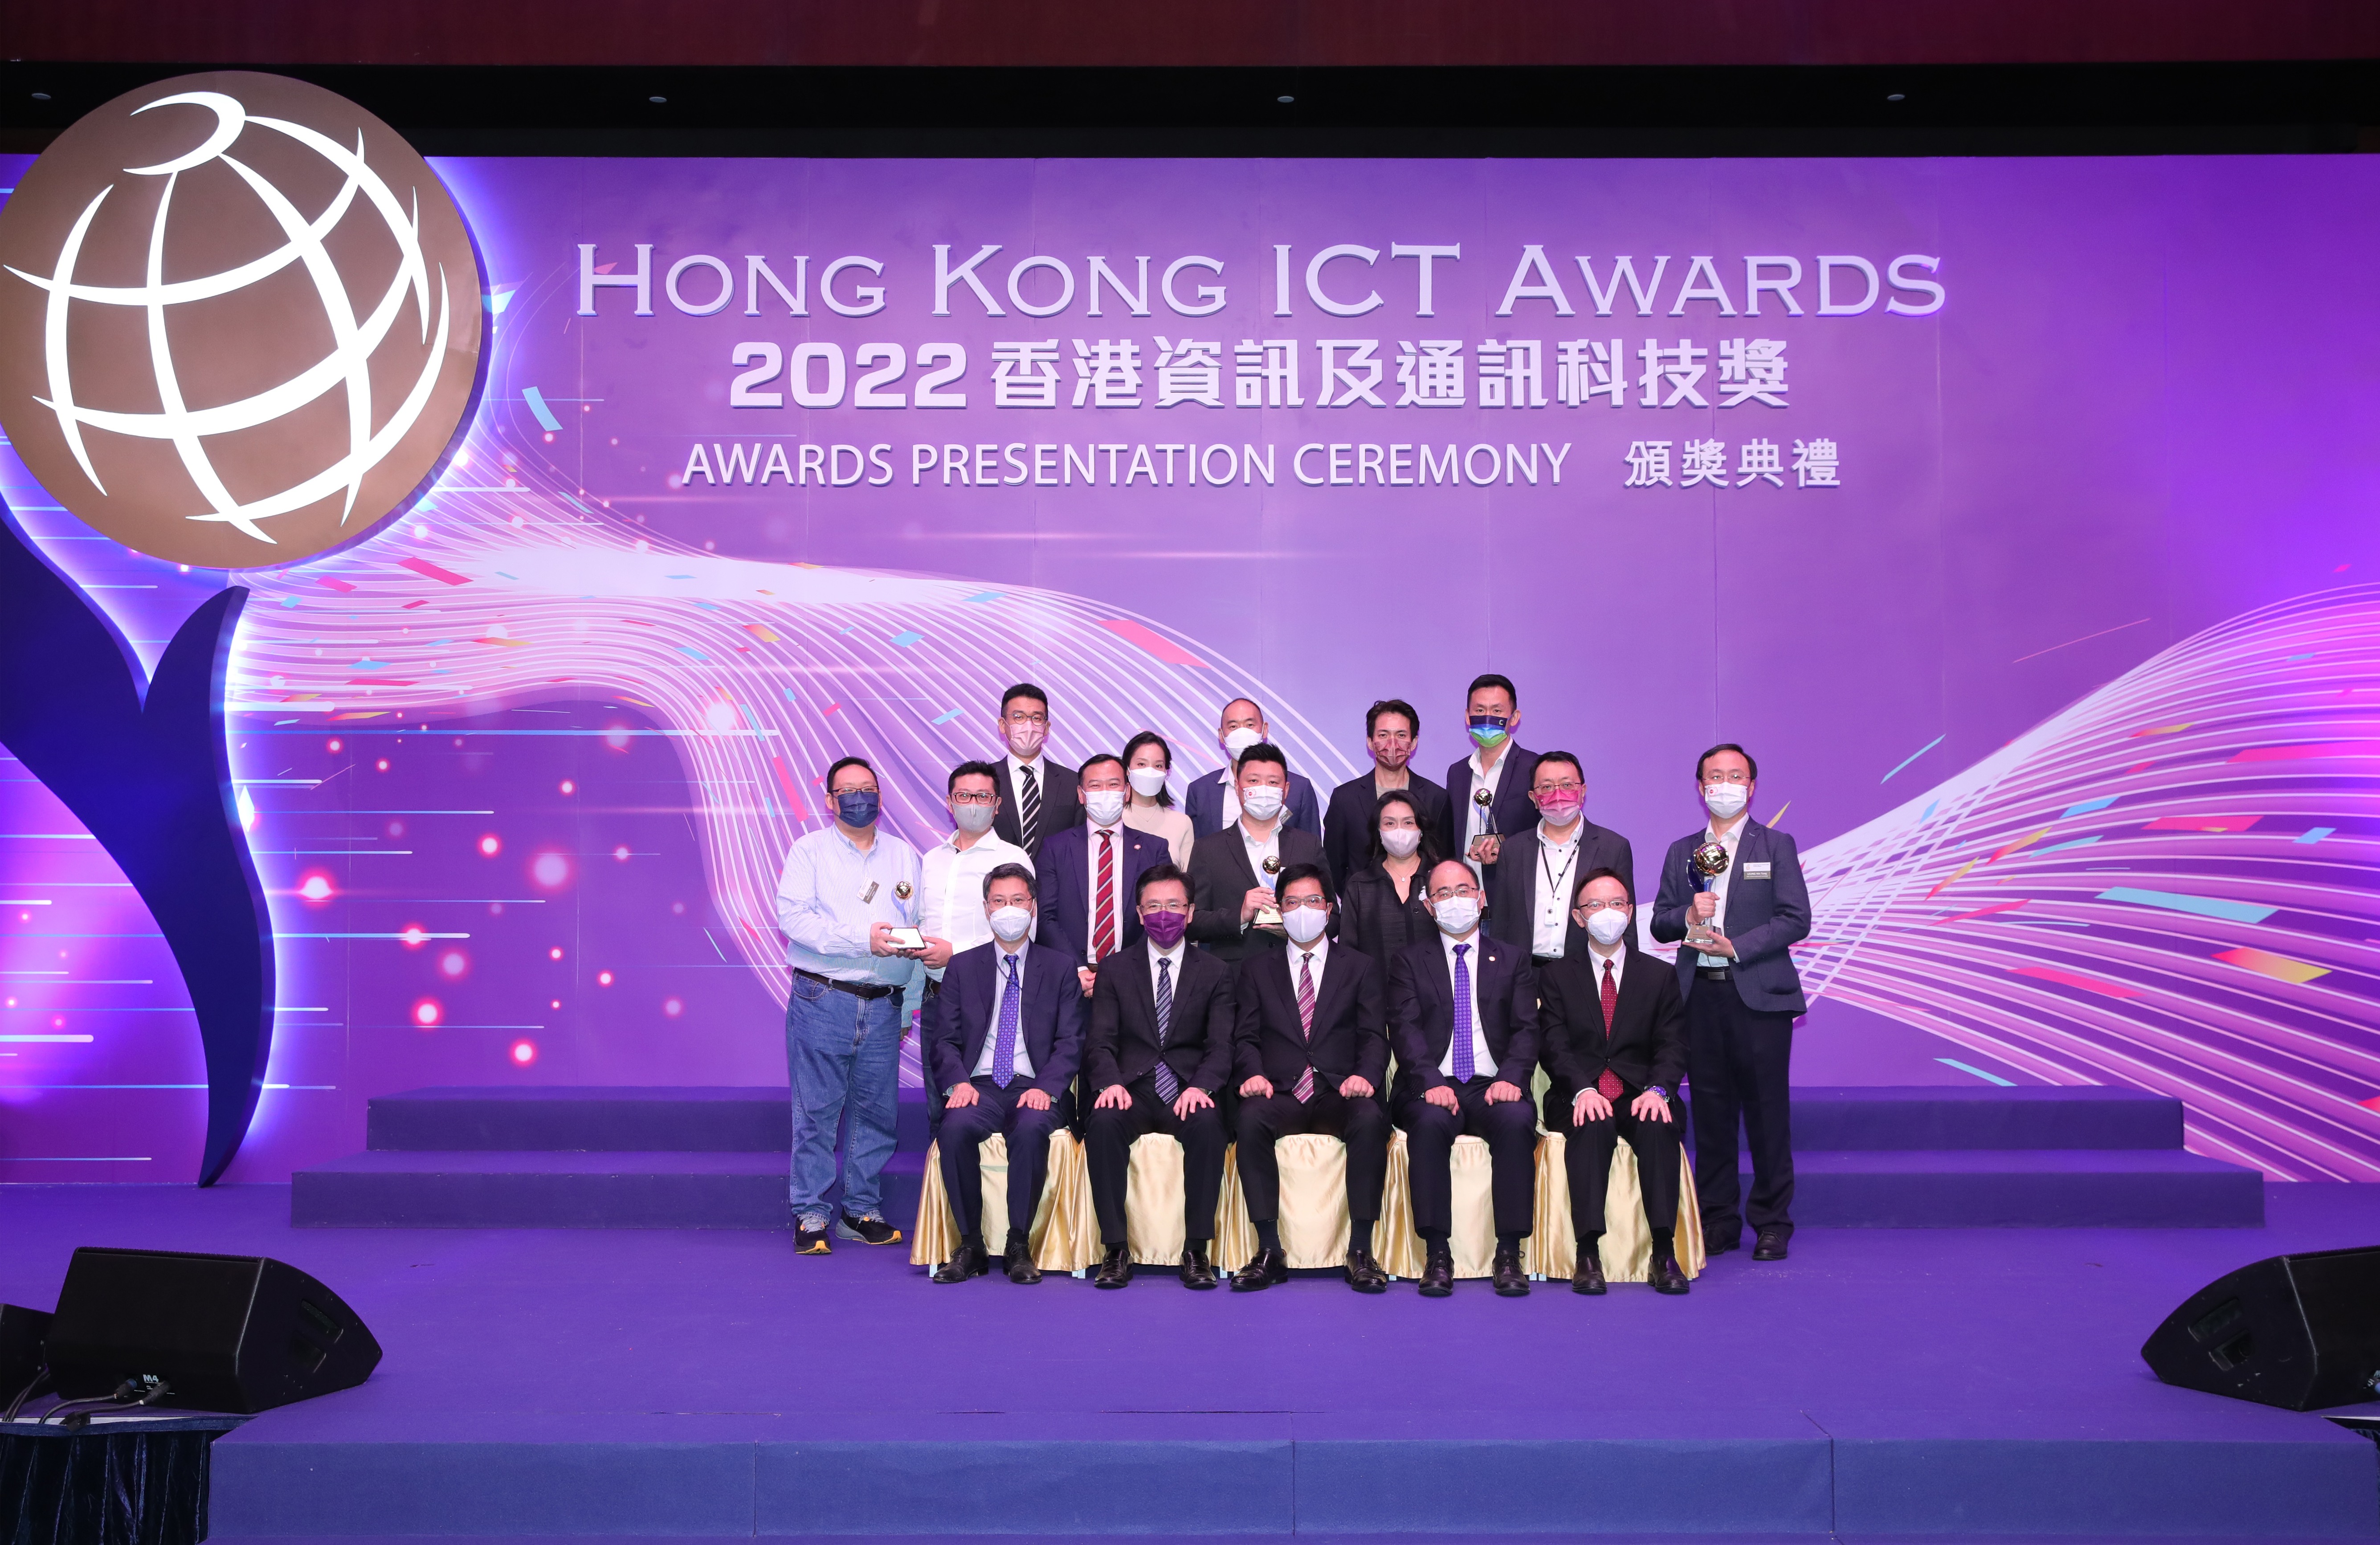 Hong Kong ICT Awards 2022 FinTech Award Winners Group Photo